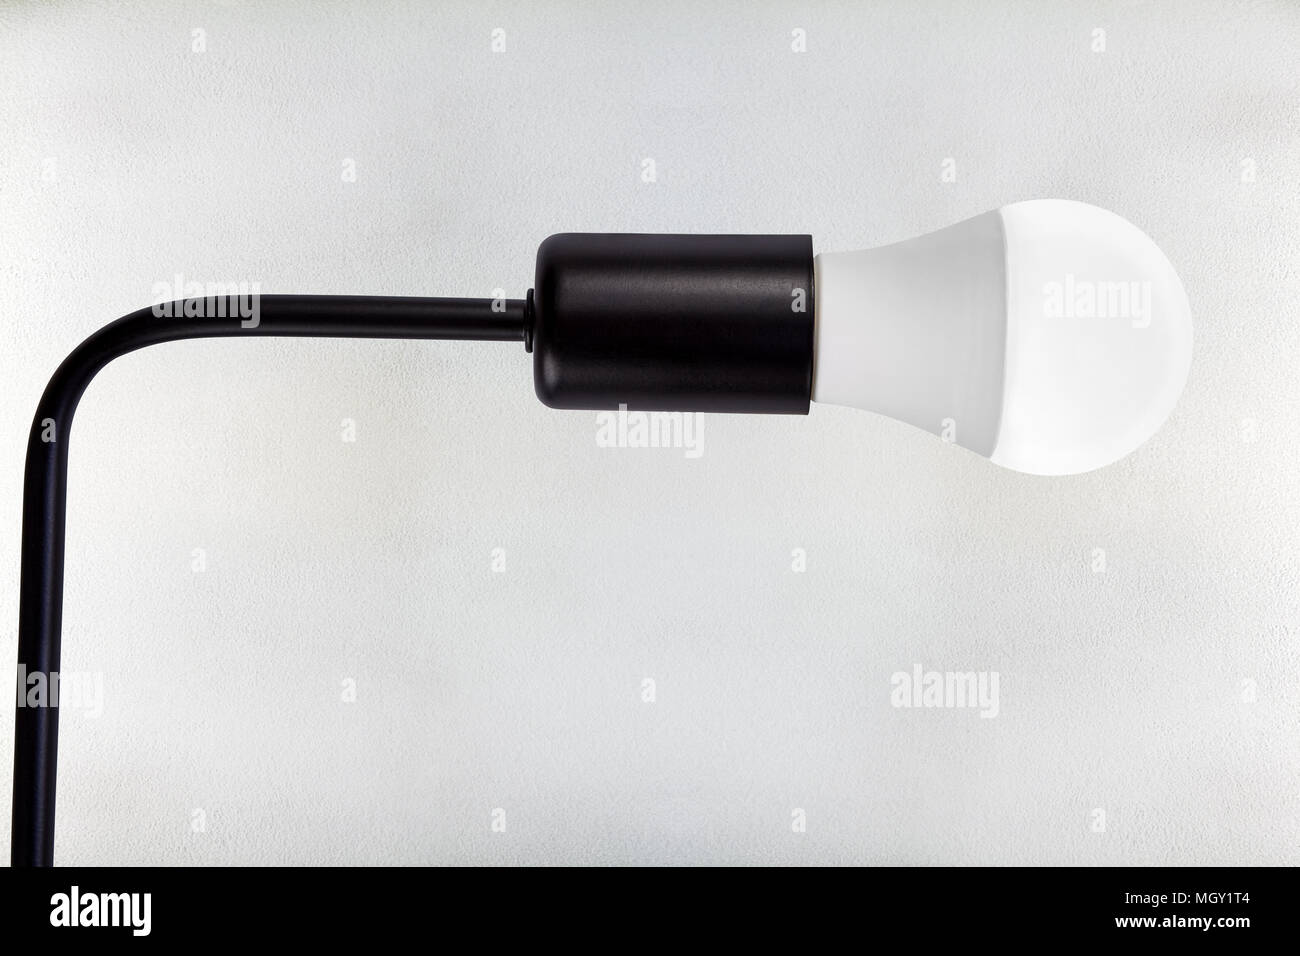 Aluminium schwarz Lampe Lampenfassung mit Schraubsockel für LED-Glühlampe,  auf dem Hintergrund der weißen Decke Textur mit gemalten Betonplatte  Stockfotografie - Alamy